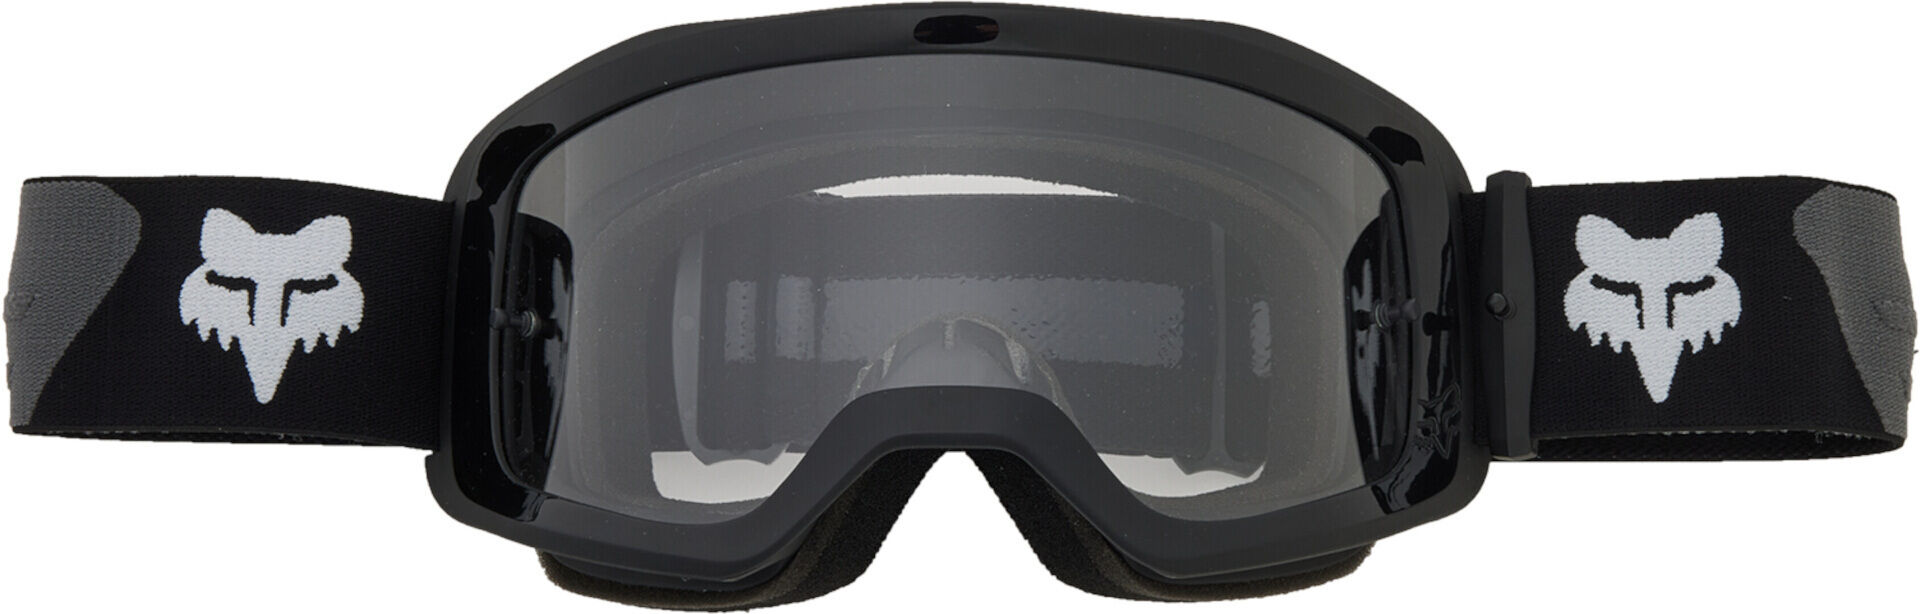 Fox Main S Gafas de motocross - Negro Gris (un tamaño)